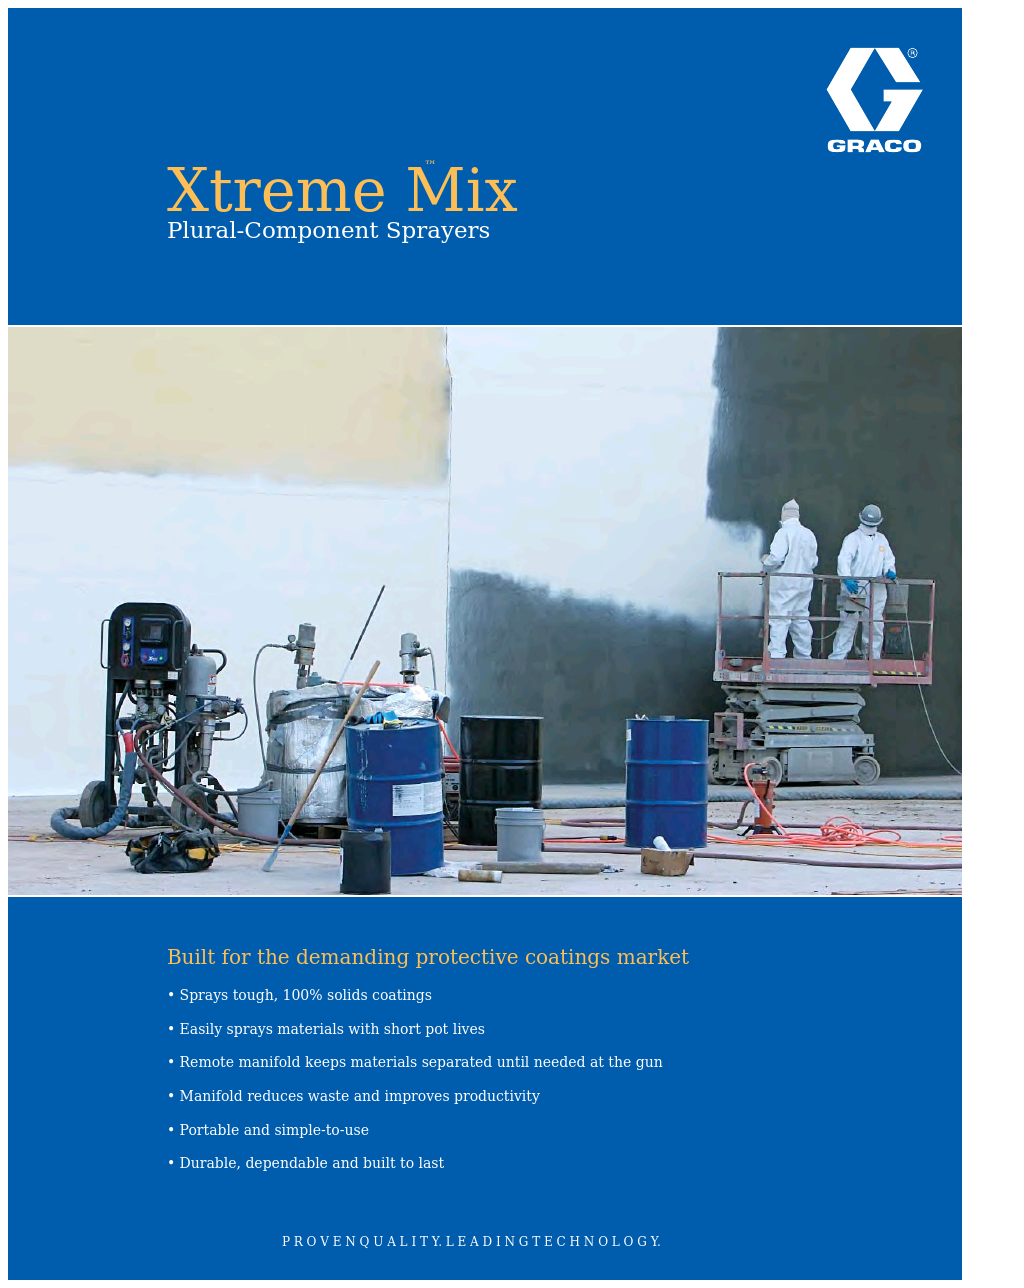 Xtreme Mix XTR502